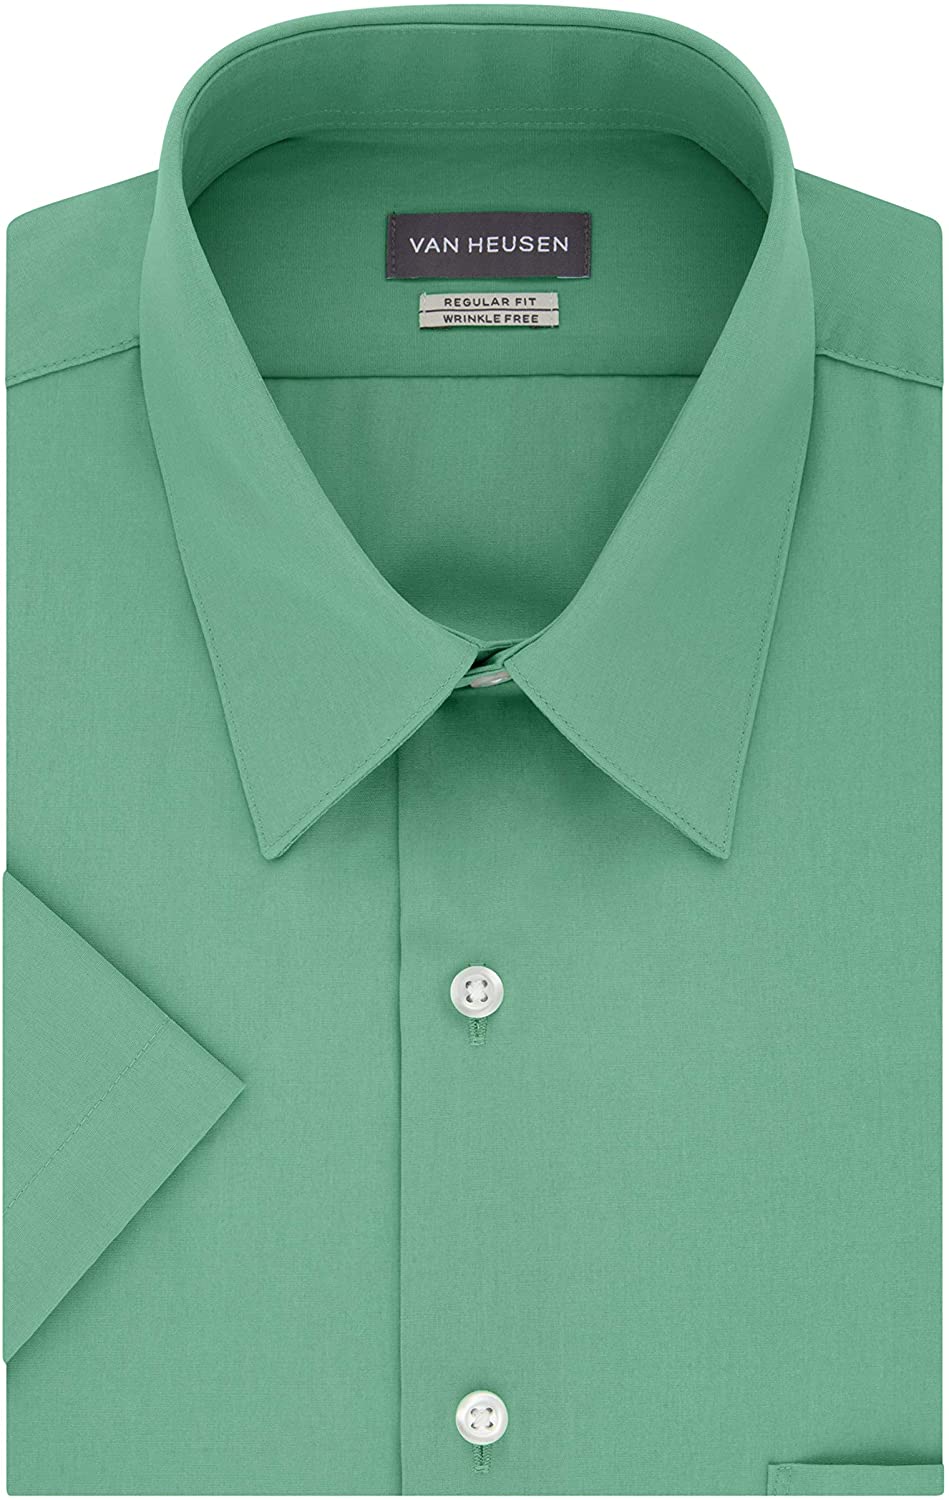 Van Heusen Men's Short Sleeve Dress Shirt Regular Fit Poplin Solid | eBay